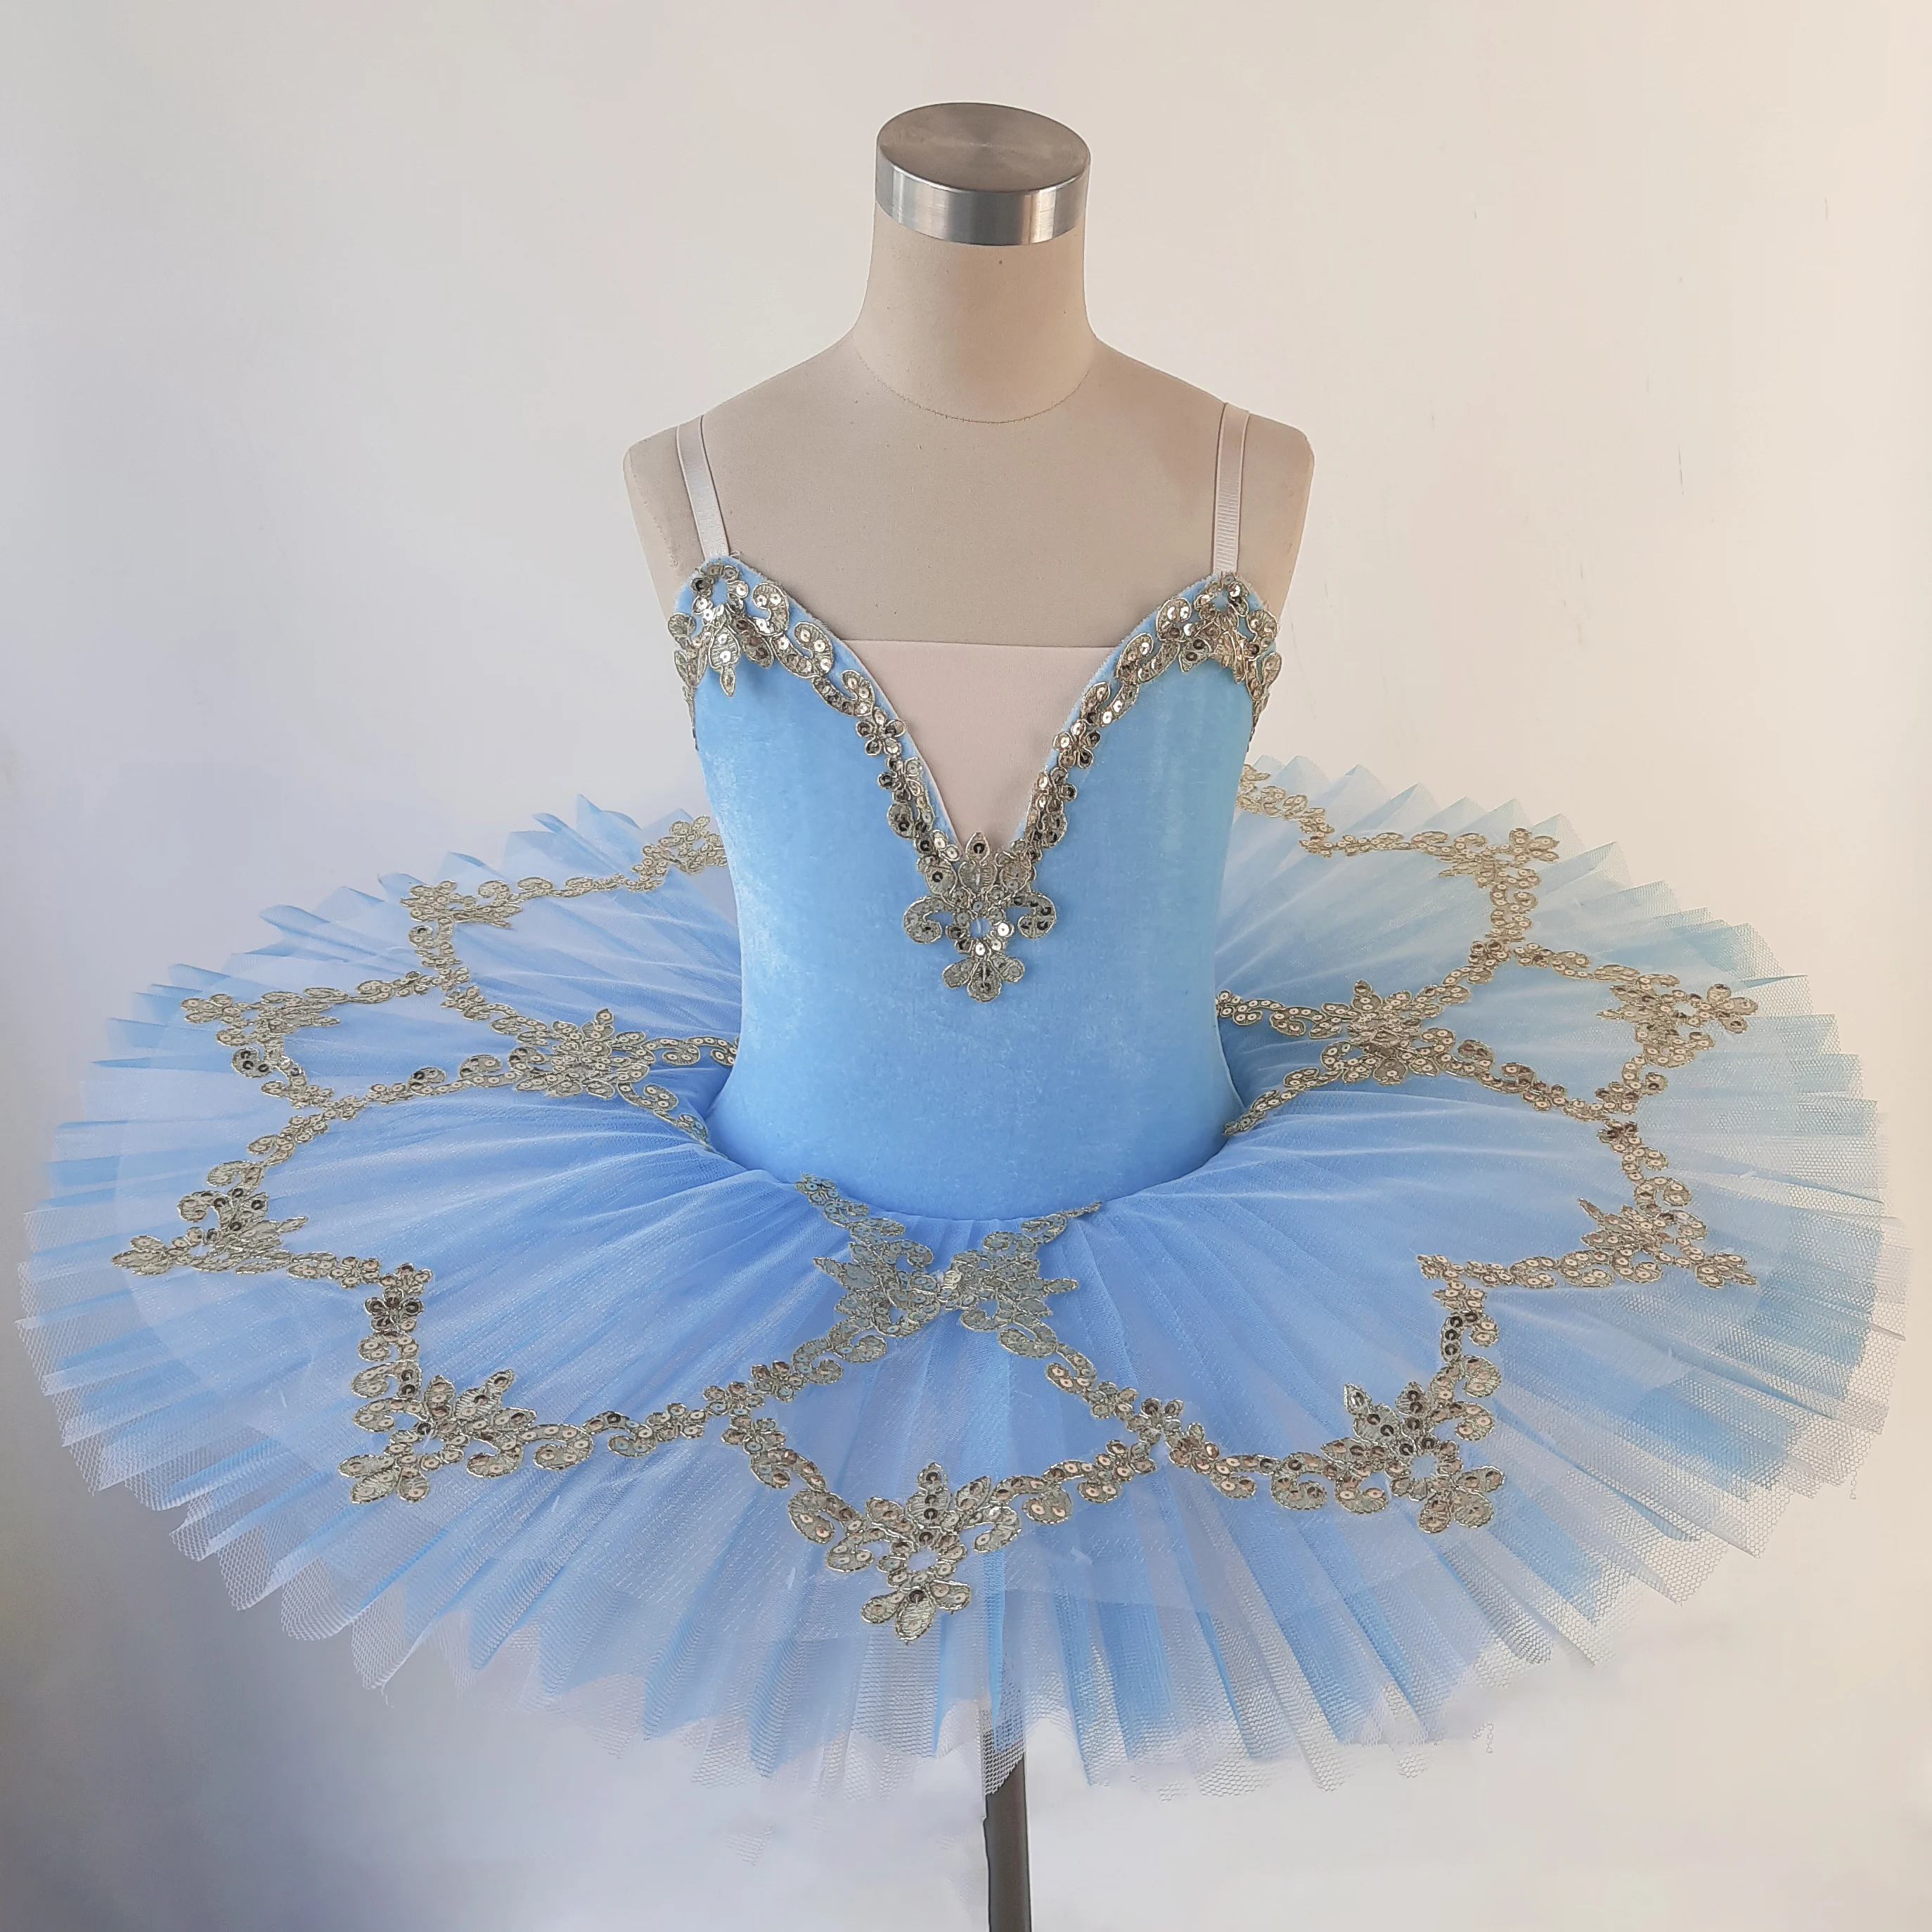 iiniim Kinder Kleid Mädchen Prinzessin Kostüm Ballerina Latein Tanzkleid Pailletten Tutu Kleid Fasching Karneval Kostüm Partykleid 